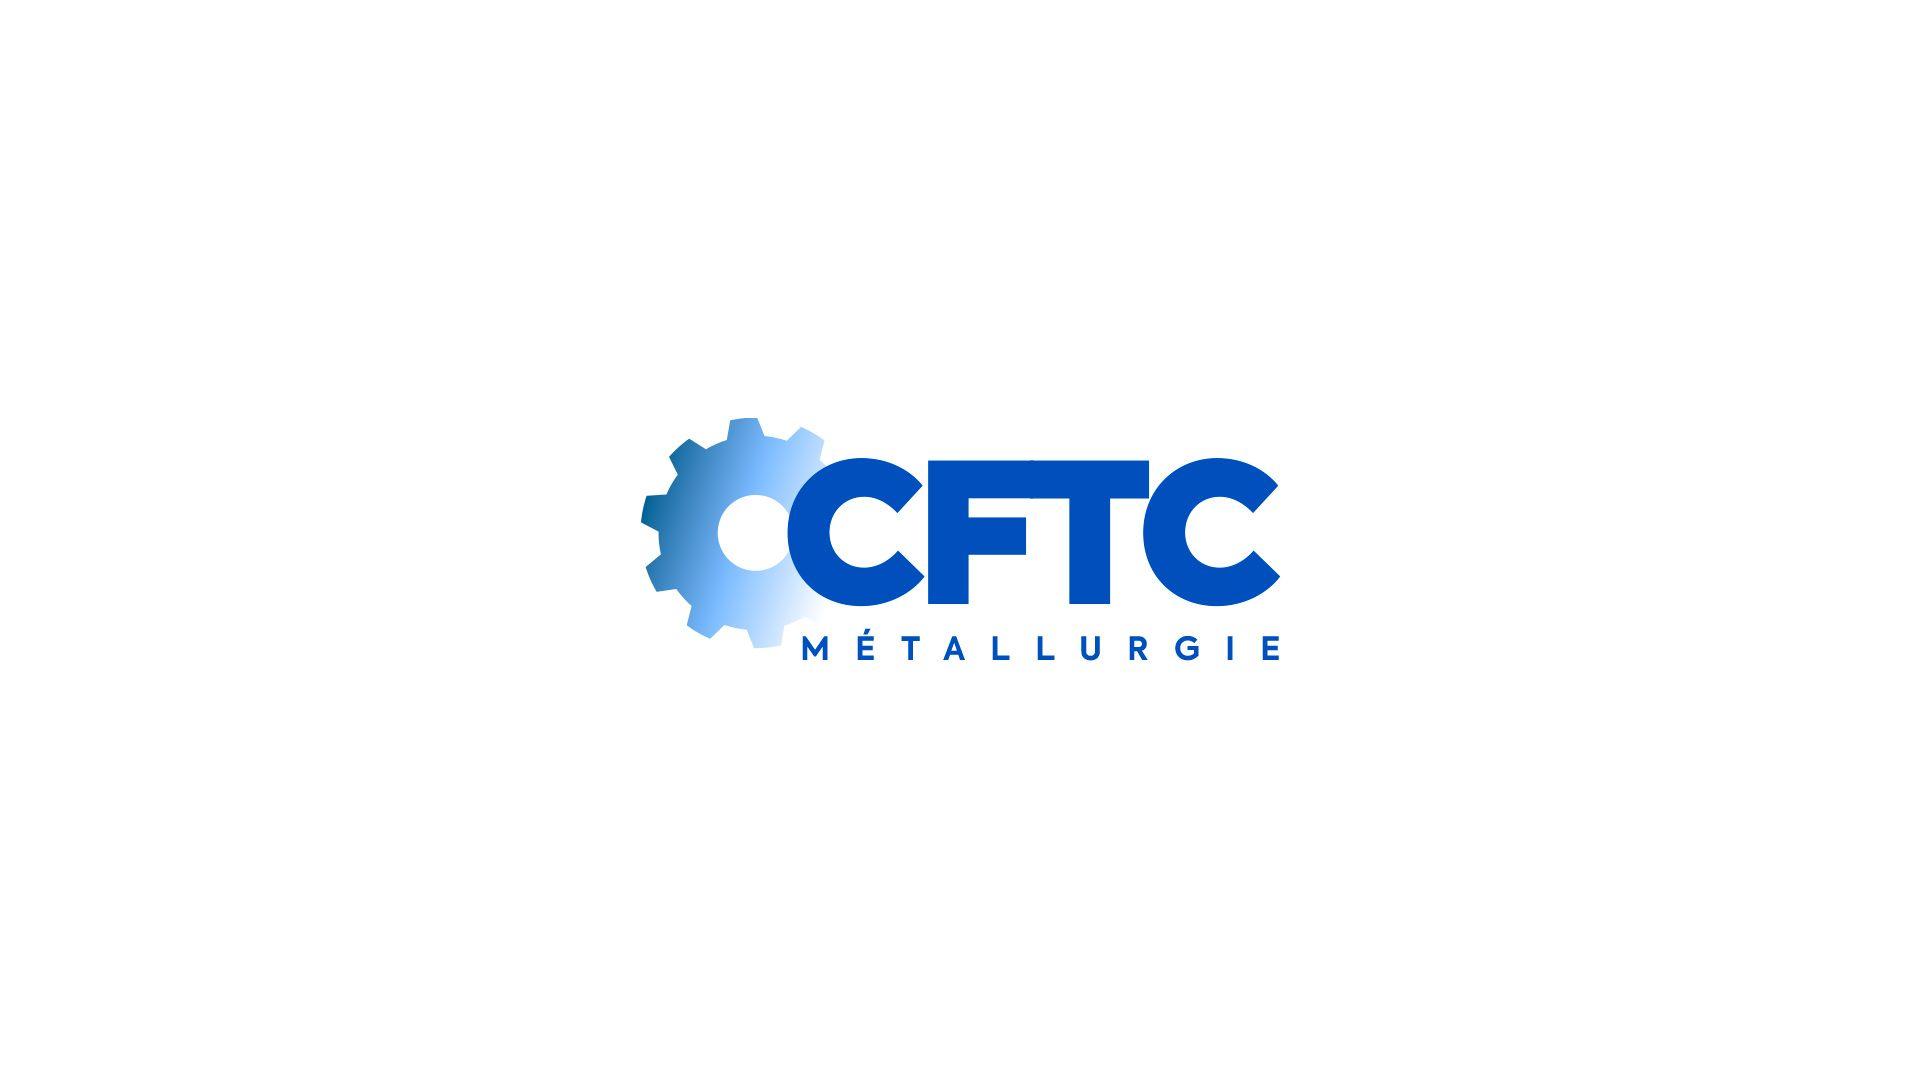 CFTC Logo - Nouveau logo de la CFTC Metallurgie